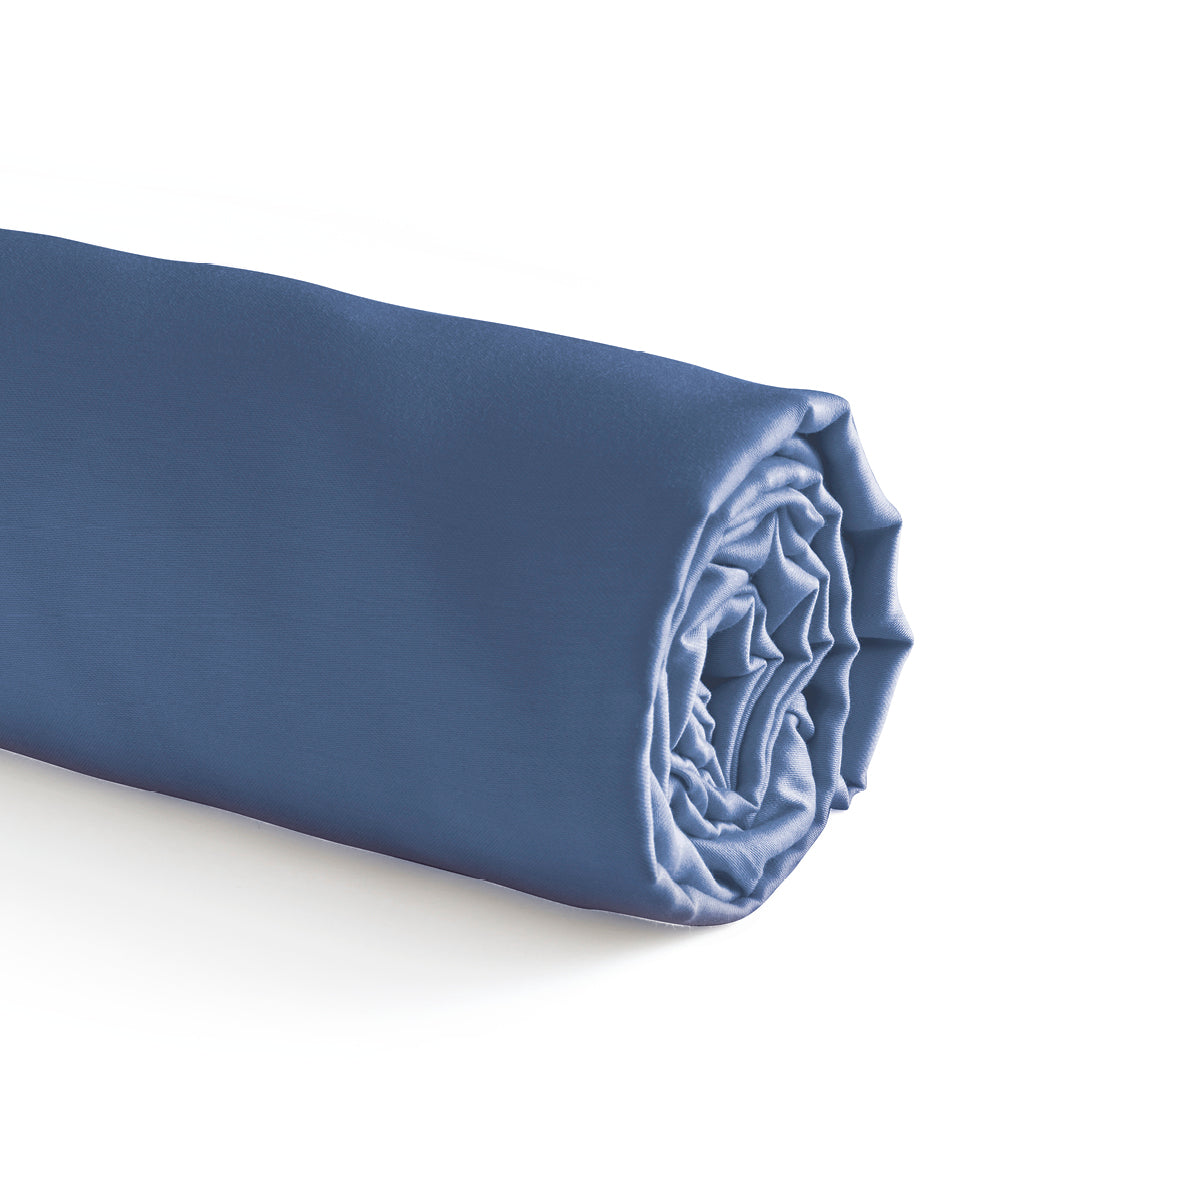 Fitted sheet cotton satin - Dark blue